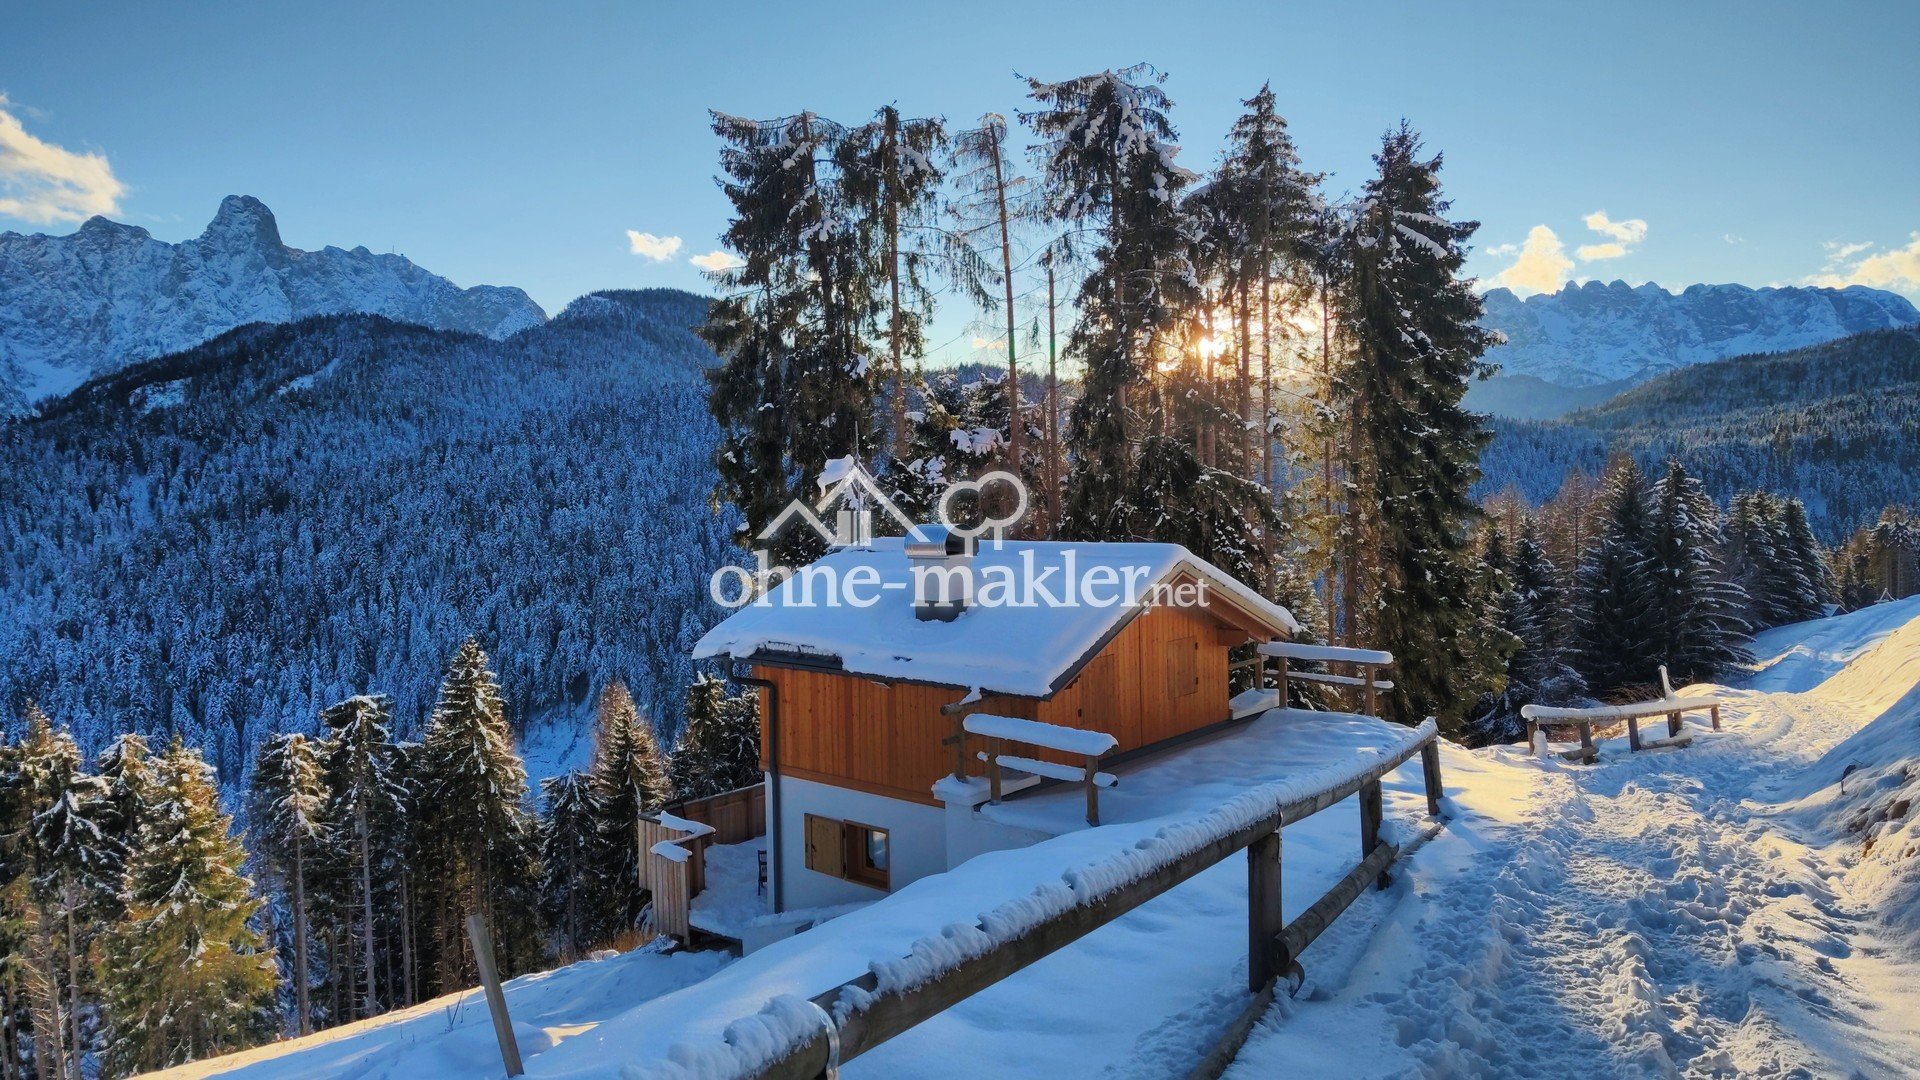 Ferienhaus in den Dolomiten - alleinstehend, Ruhelage, fantastische Aussicht